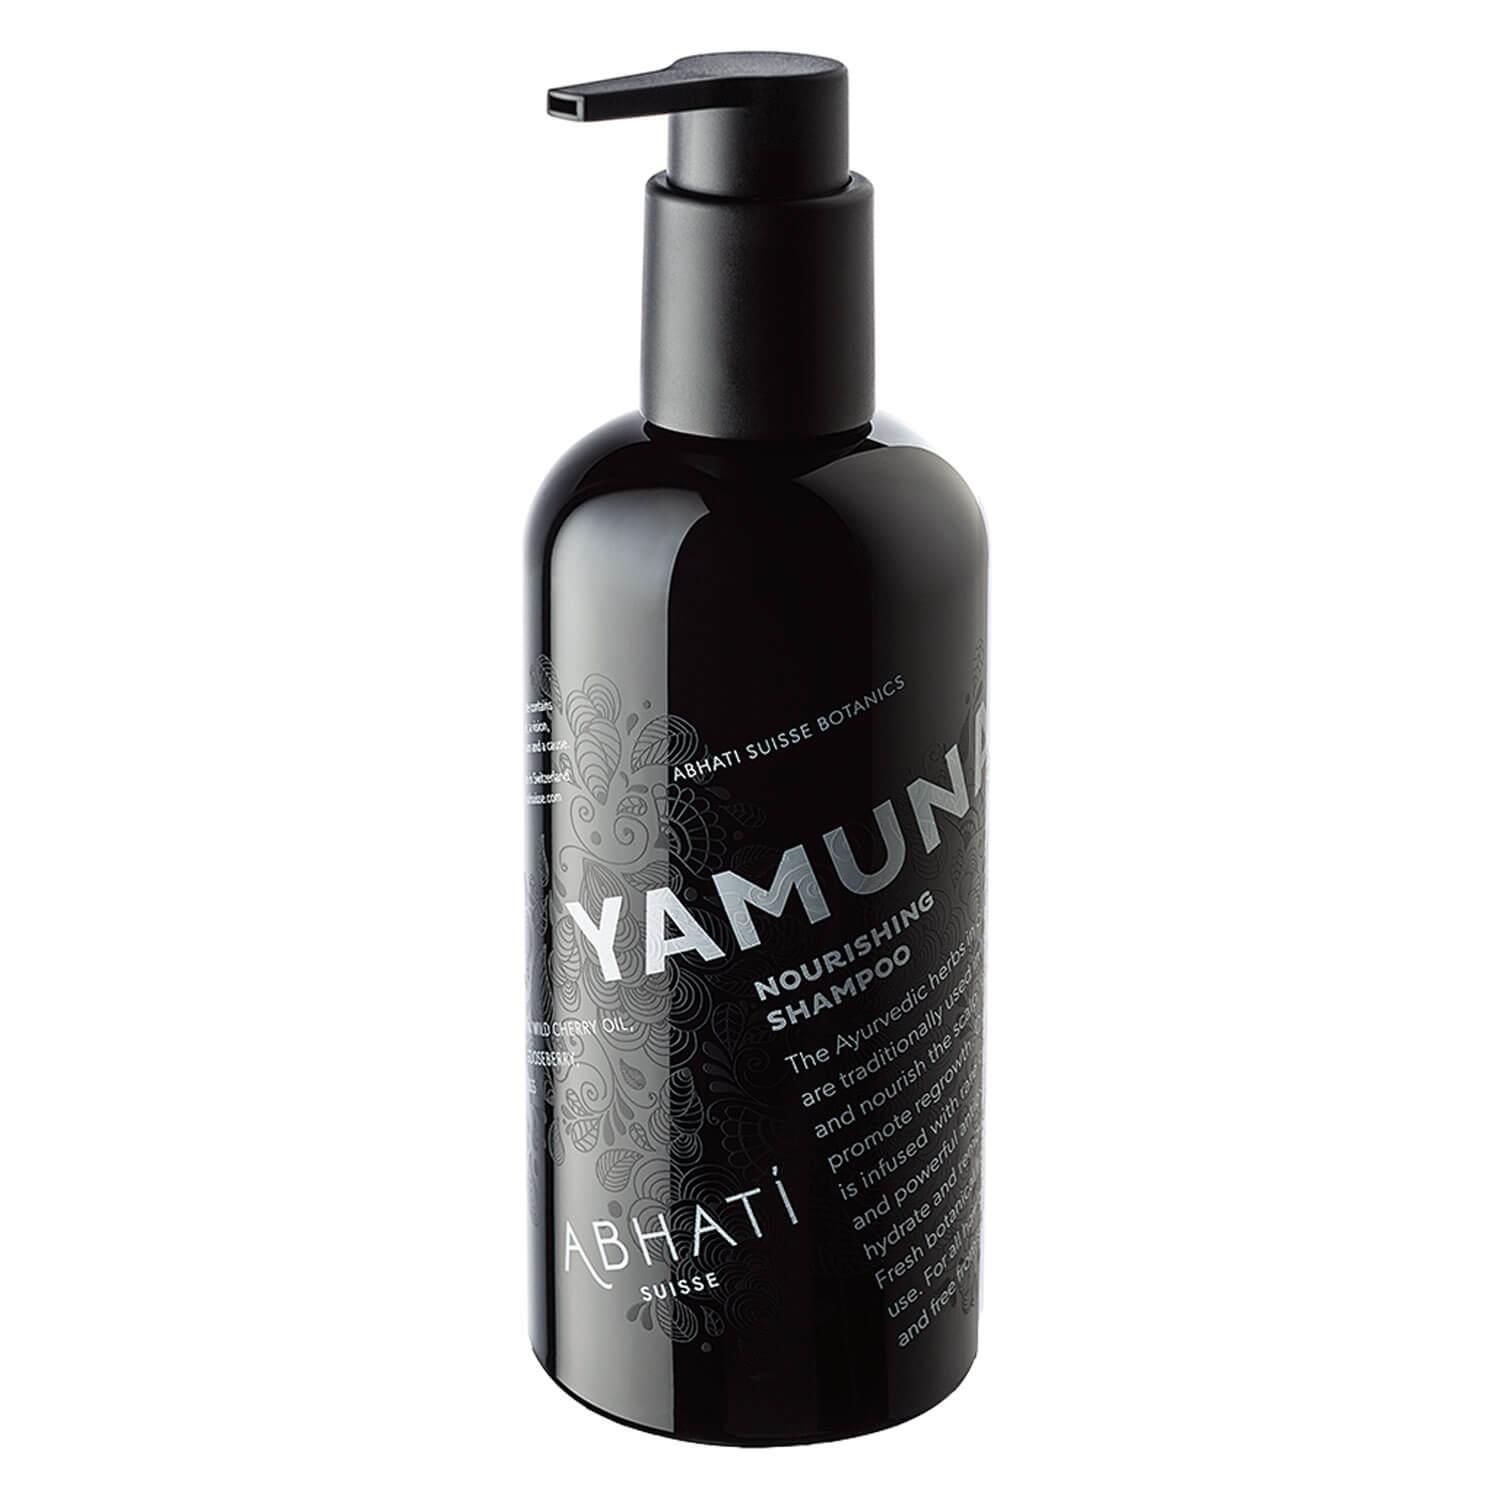 ABHATI Suisse - Yamuna Nourishing Shampoo